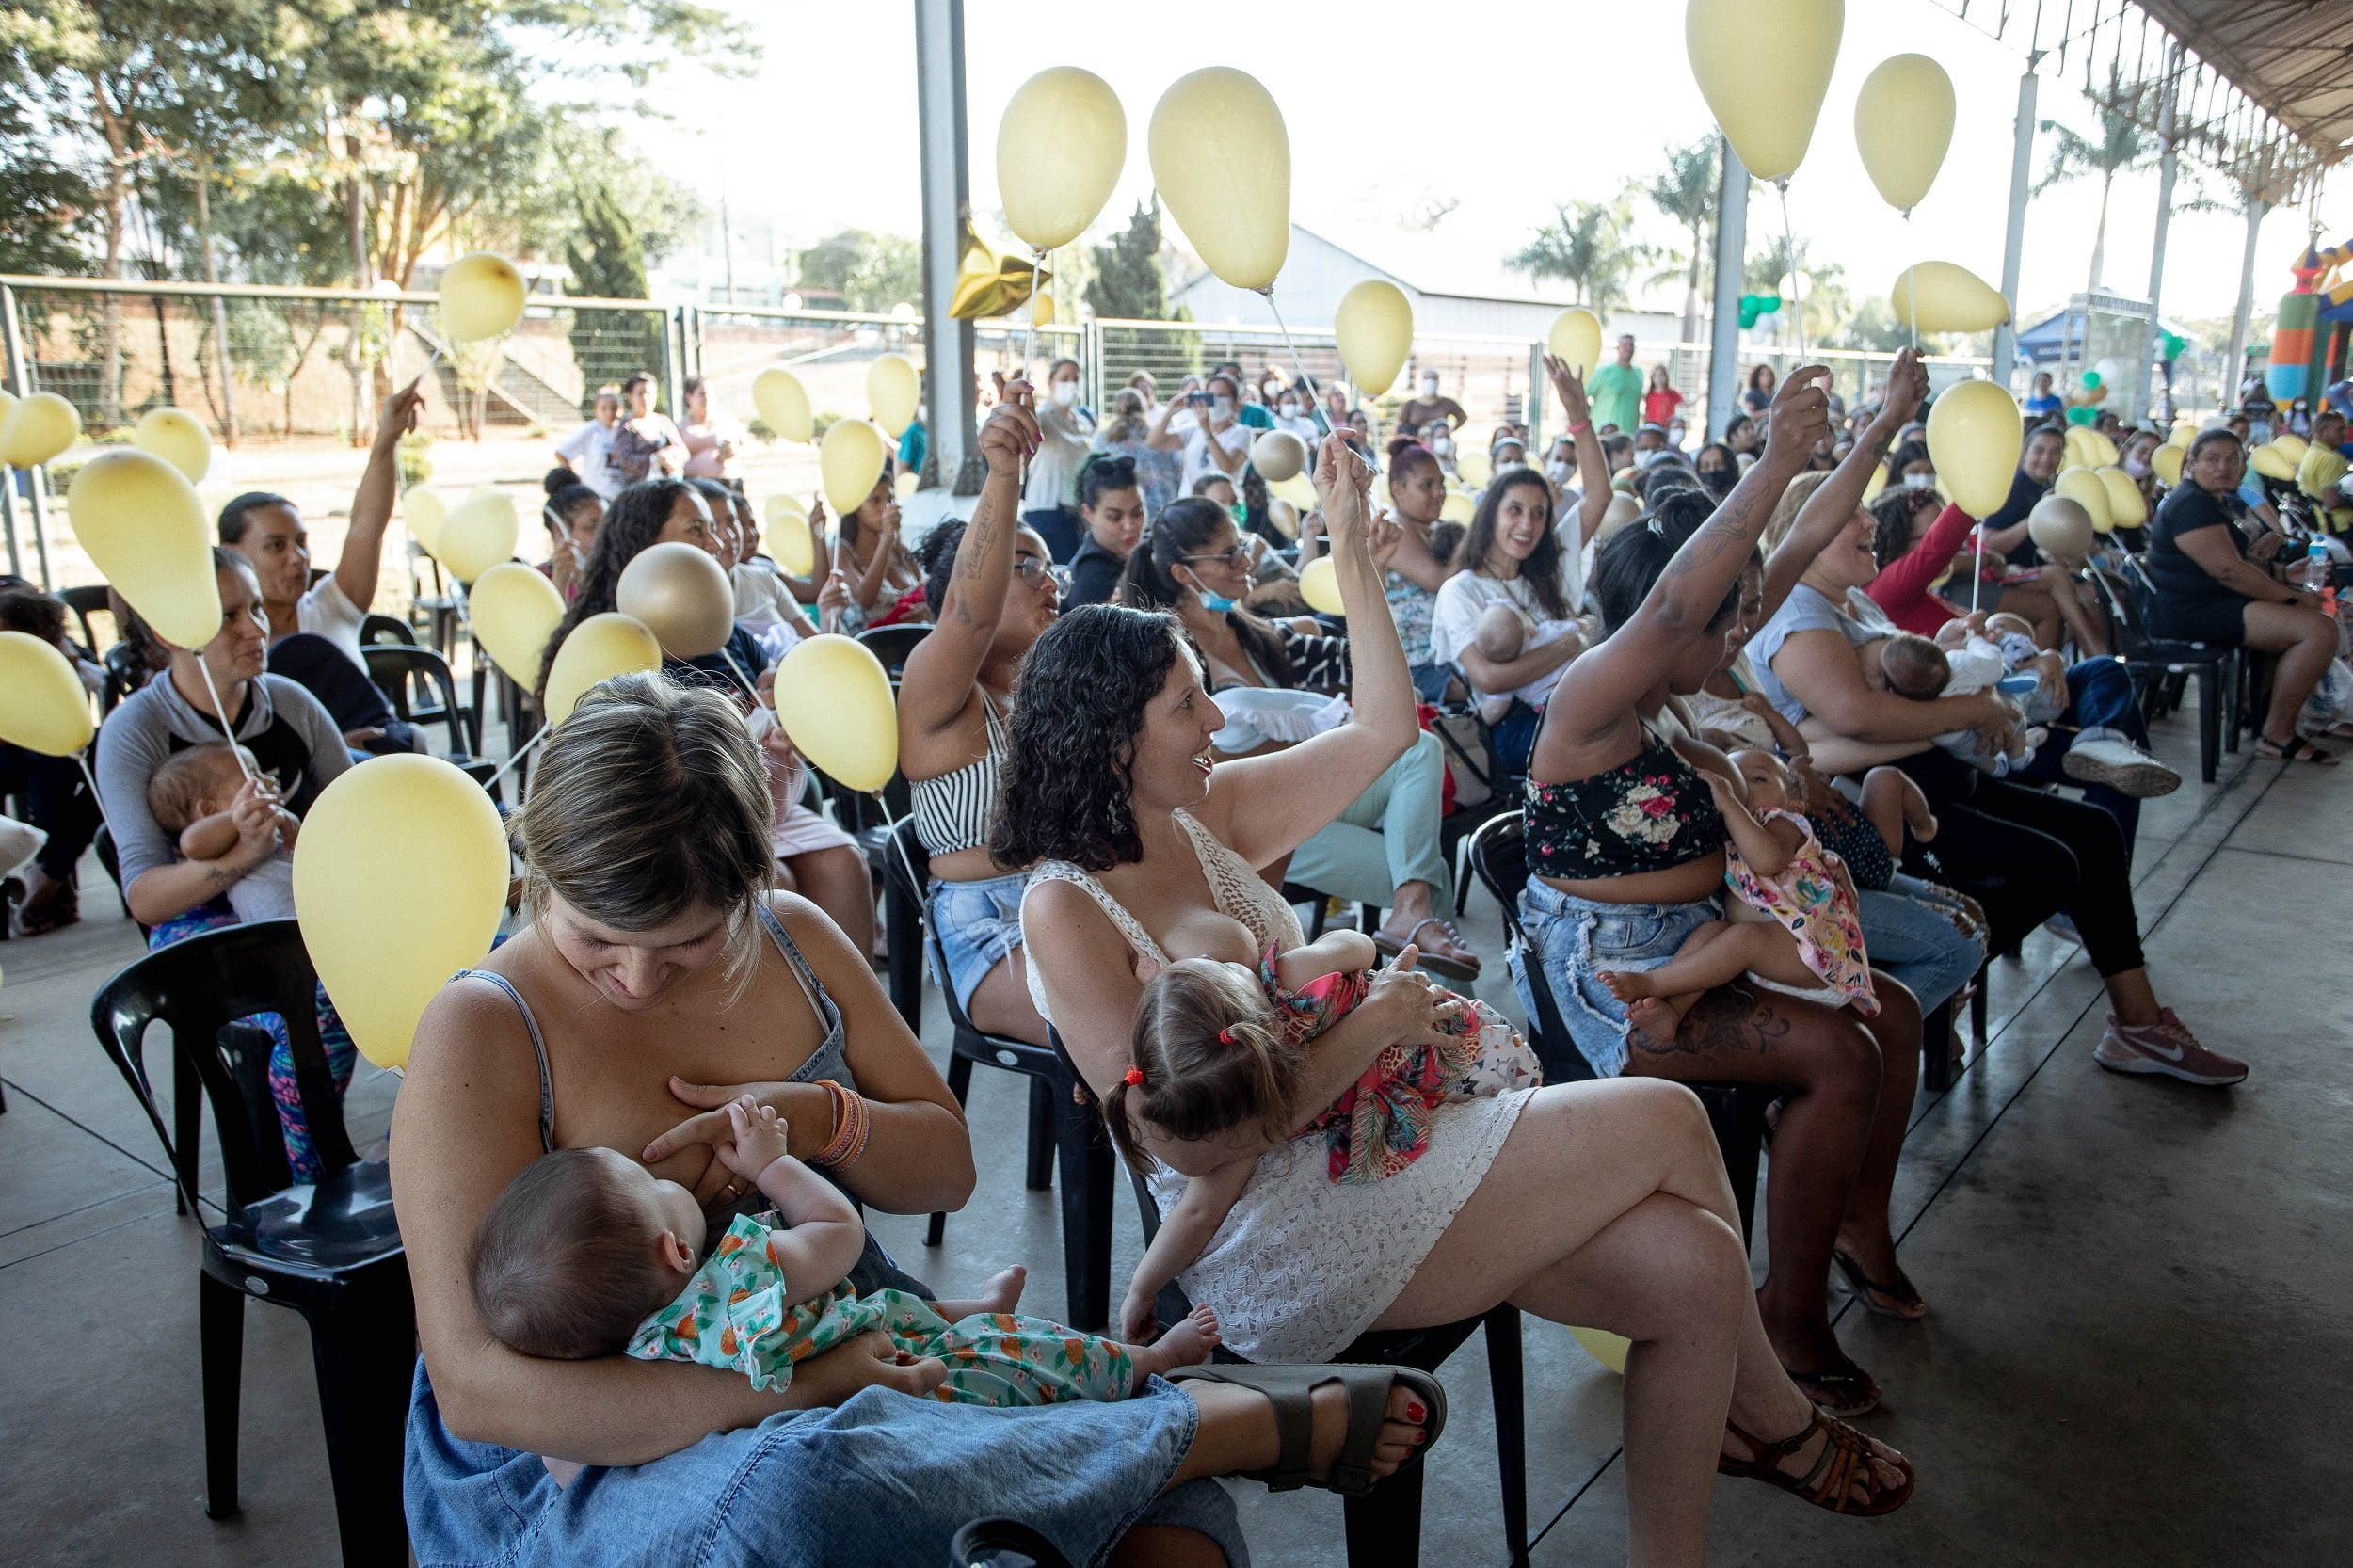 Mulheres amamentam seus bebes na Estação da Paulista e agitam balões em alusão ao Agosto Dourado realizado no ano passado